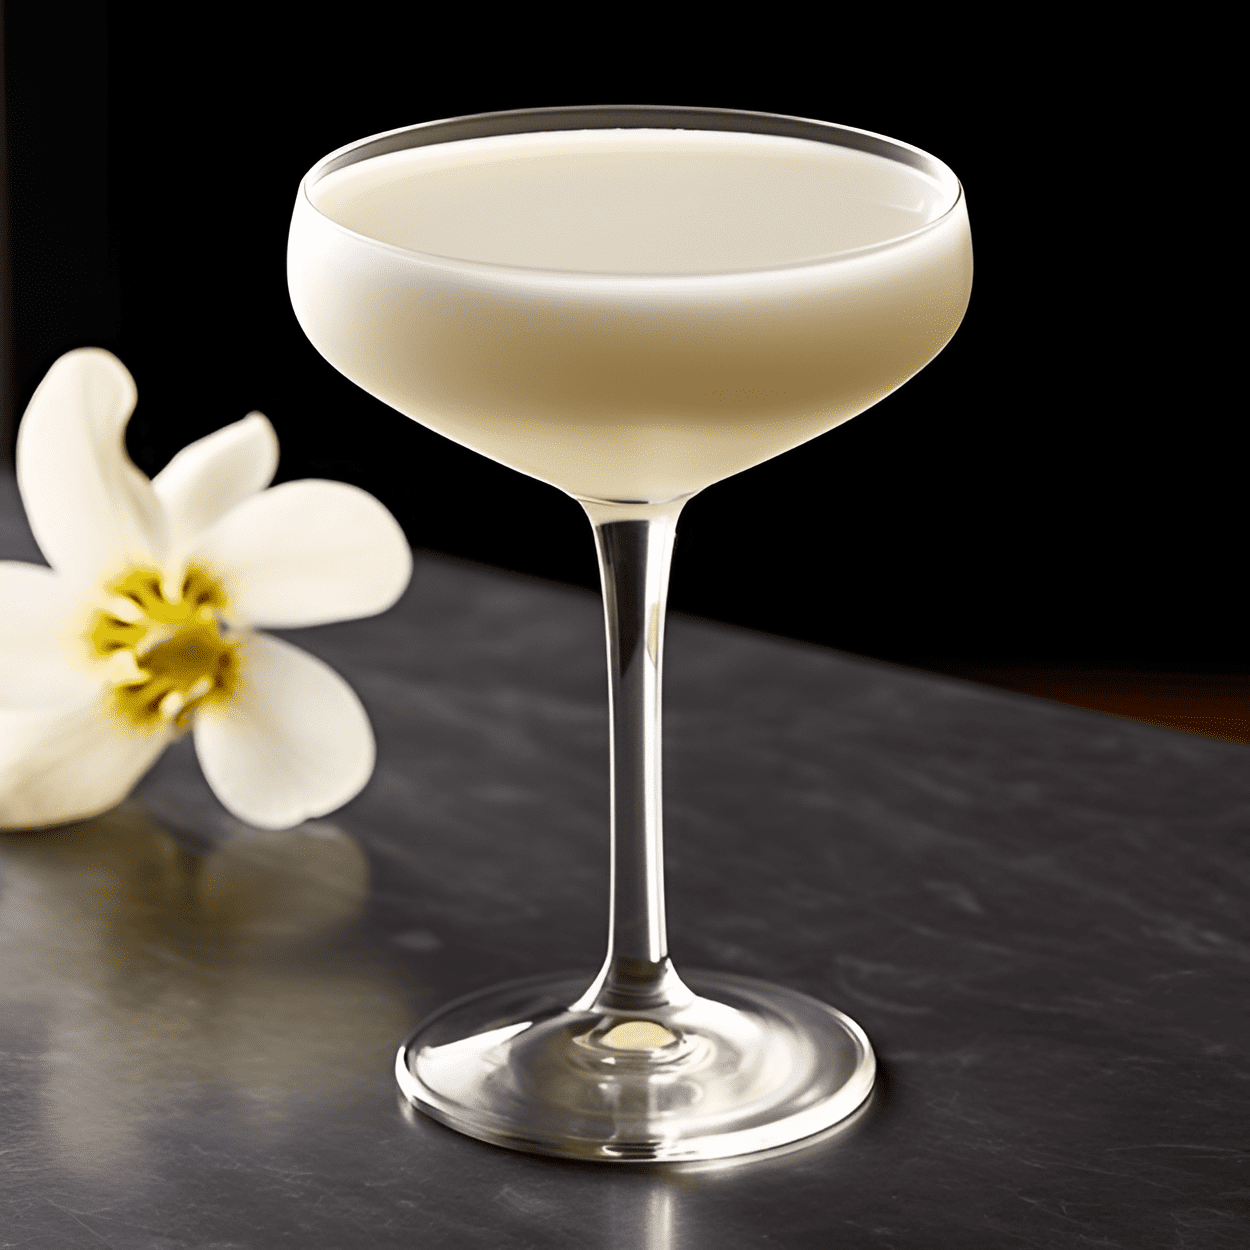 White Lotus Cóctel Receta - El White Lotus es un cóctel dulce y afrutado con un toque tropical. Tiene una textura suave y cremosa y un final refrescante y cítrico.